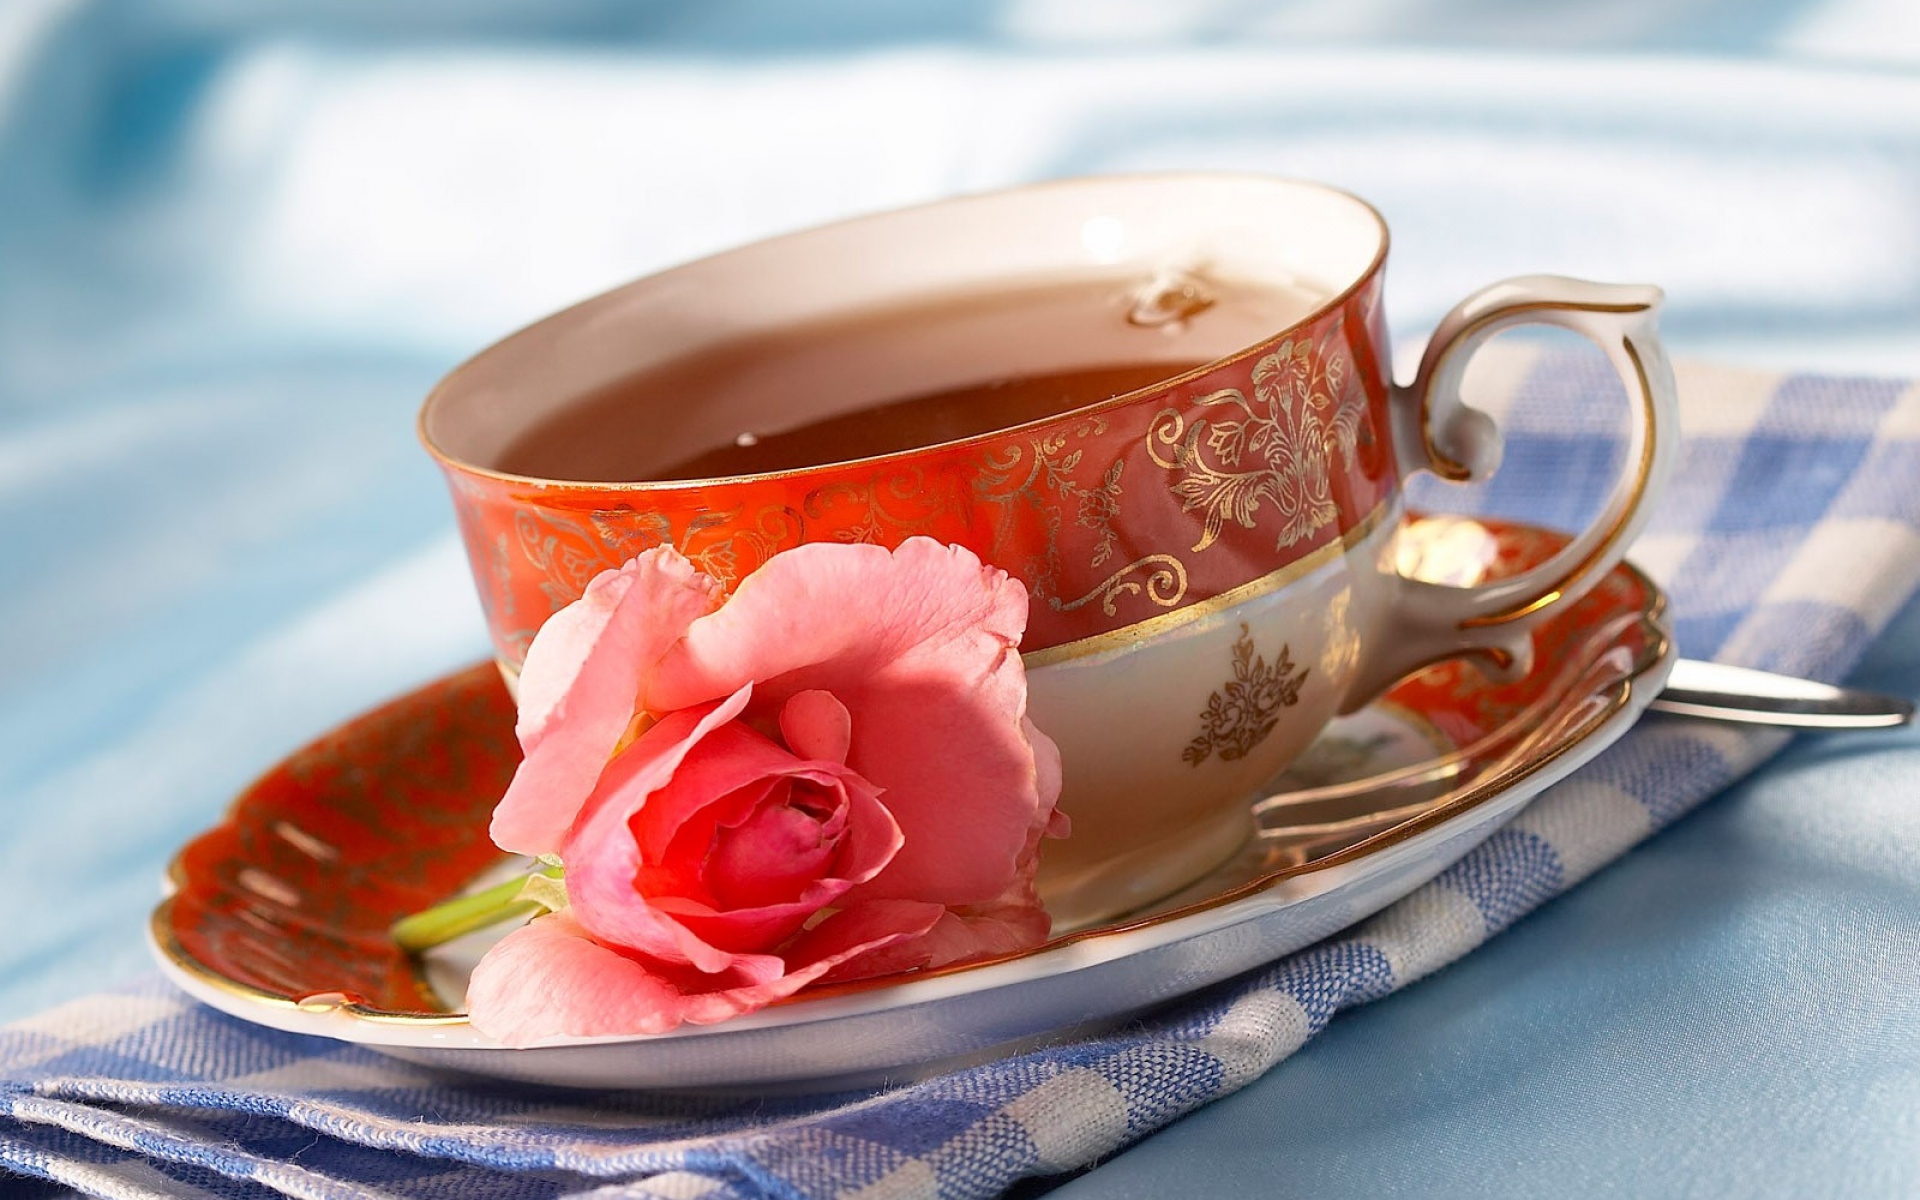 Картинки Чай, чашка, роза, салфетка фото и обои на рабочий стол